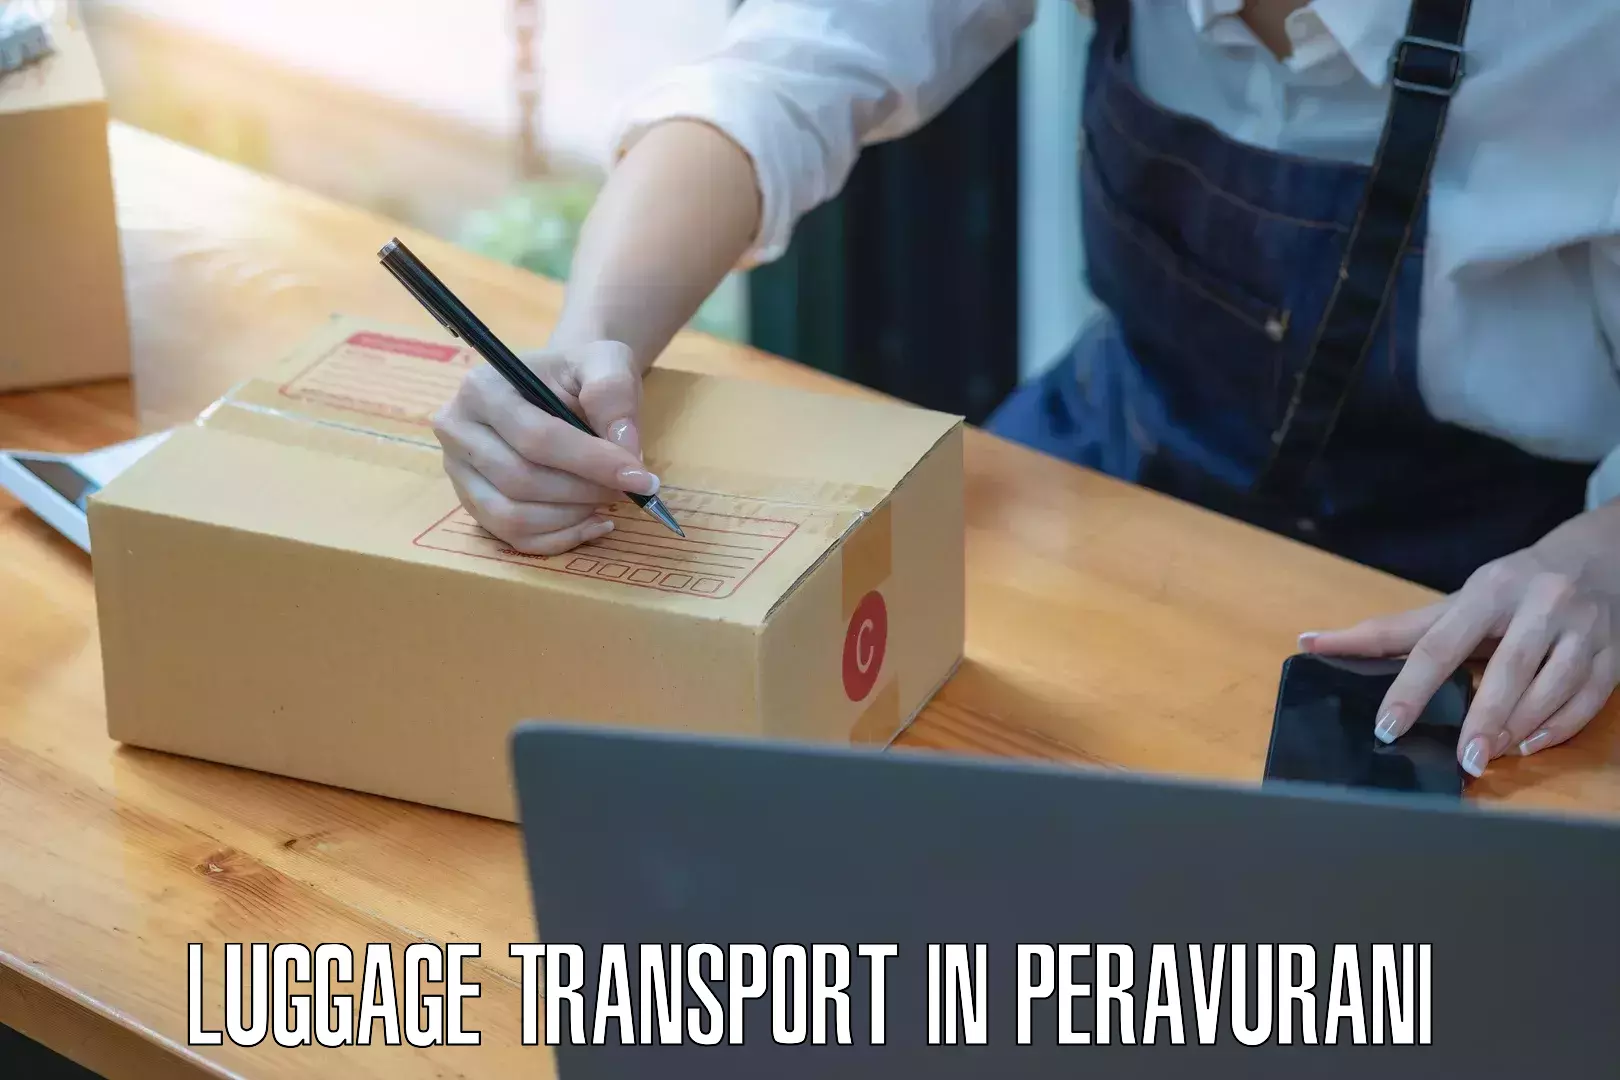 Rural baggage transport in Peravurani